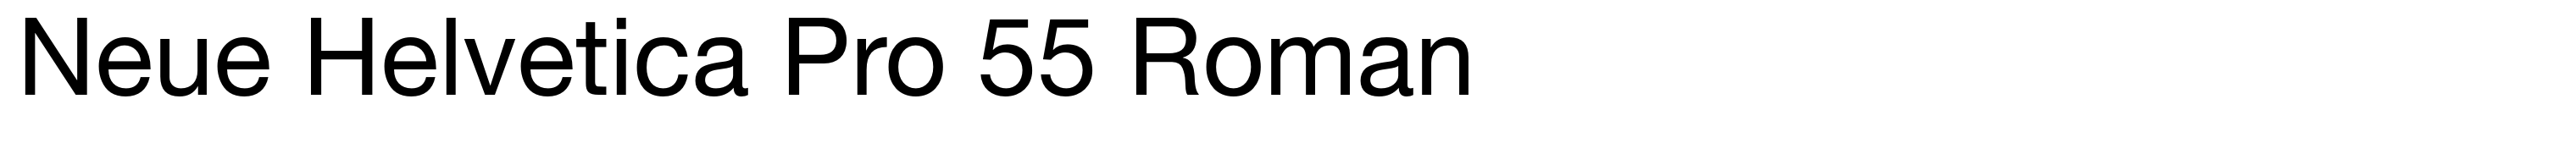 Neue Helvetica Pro 55 Roman